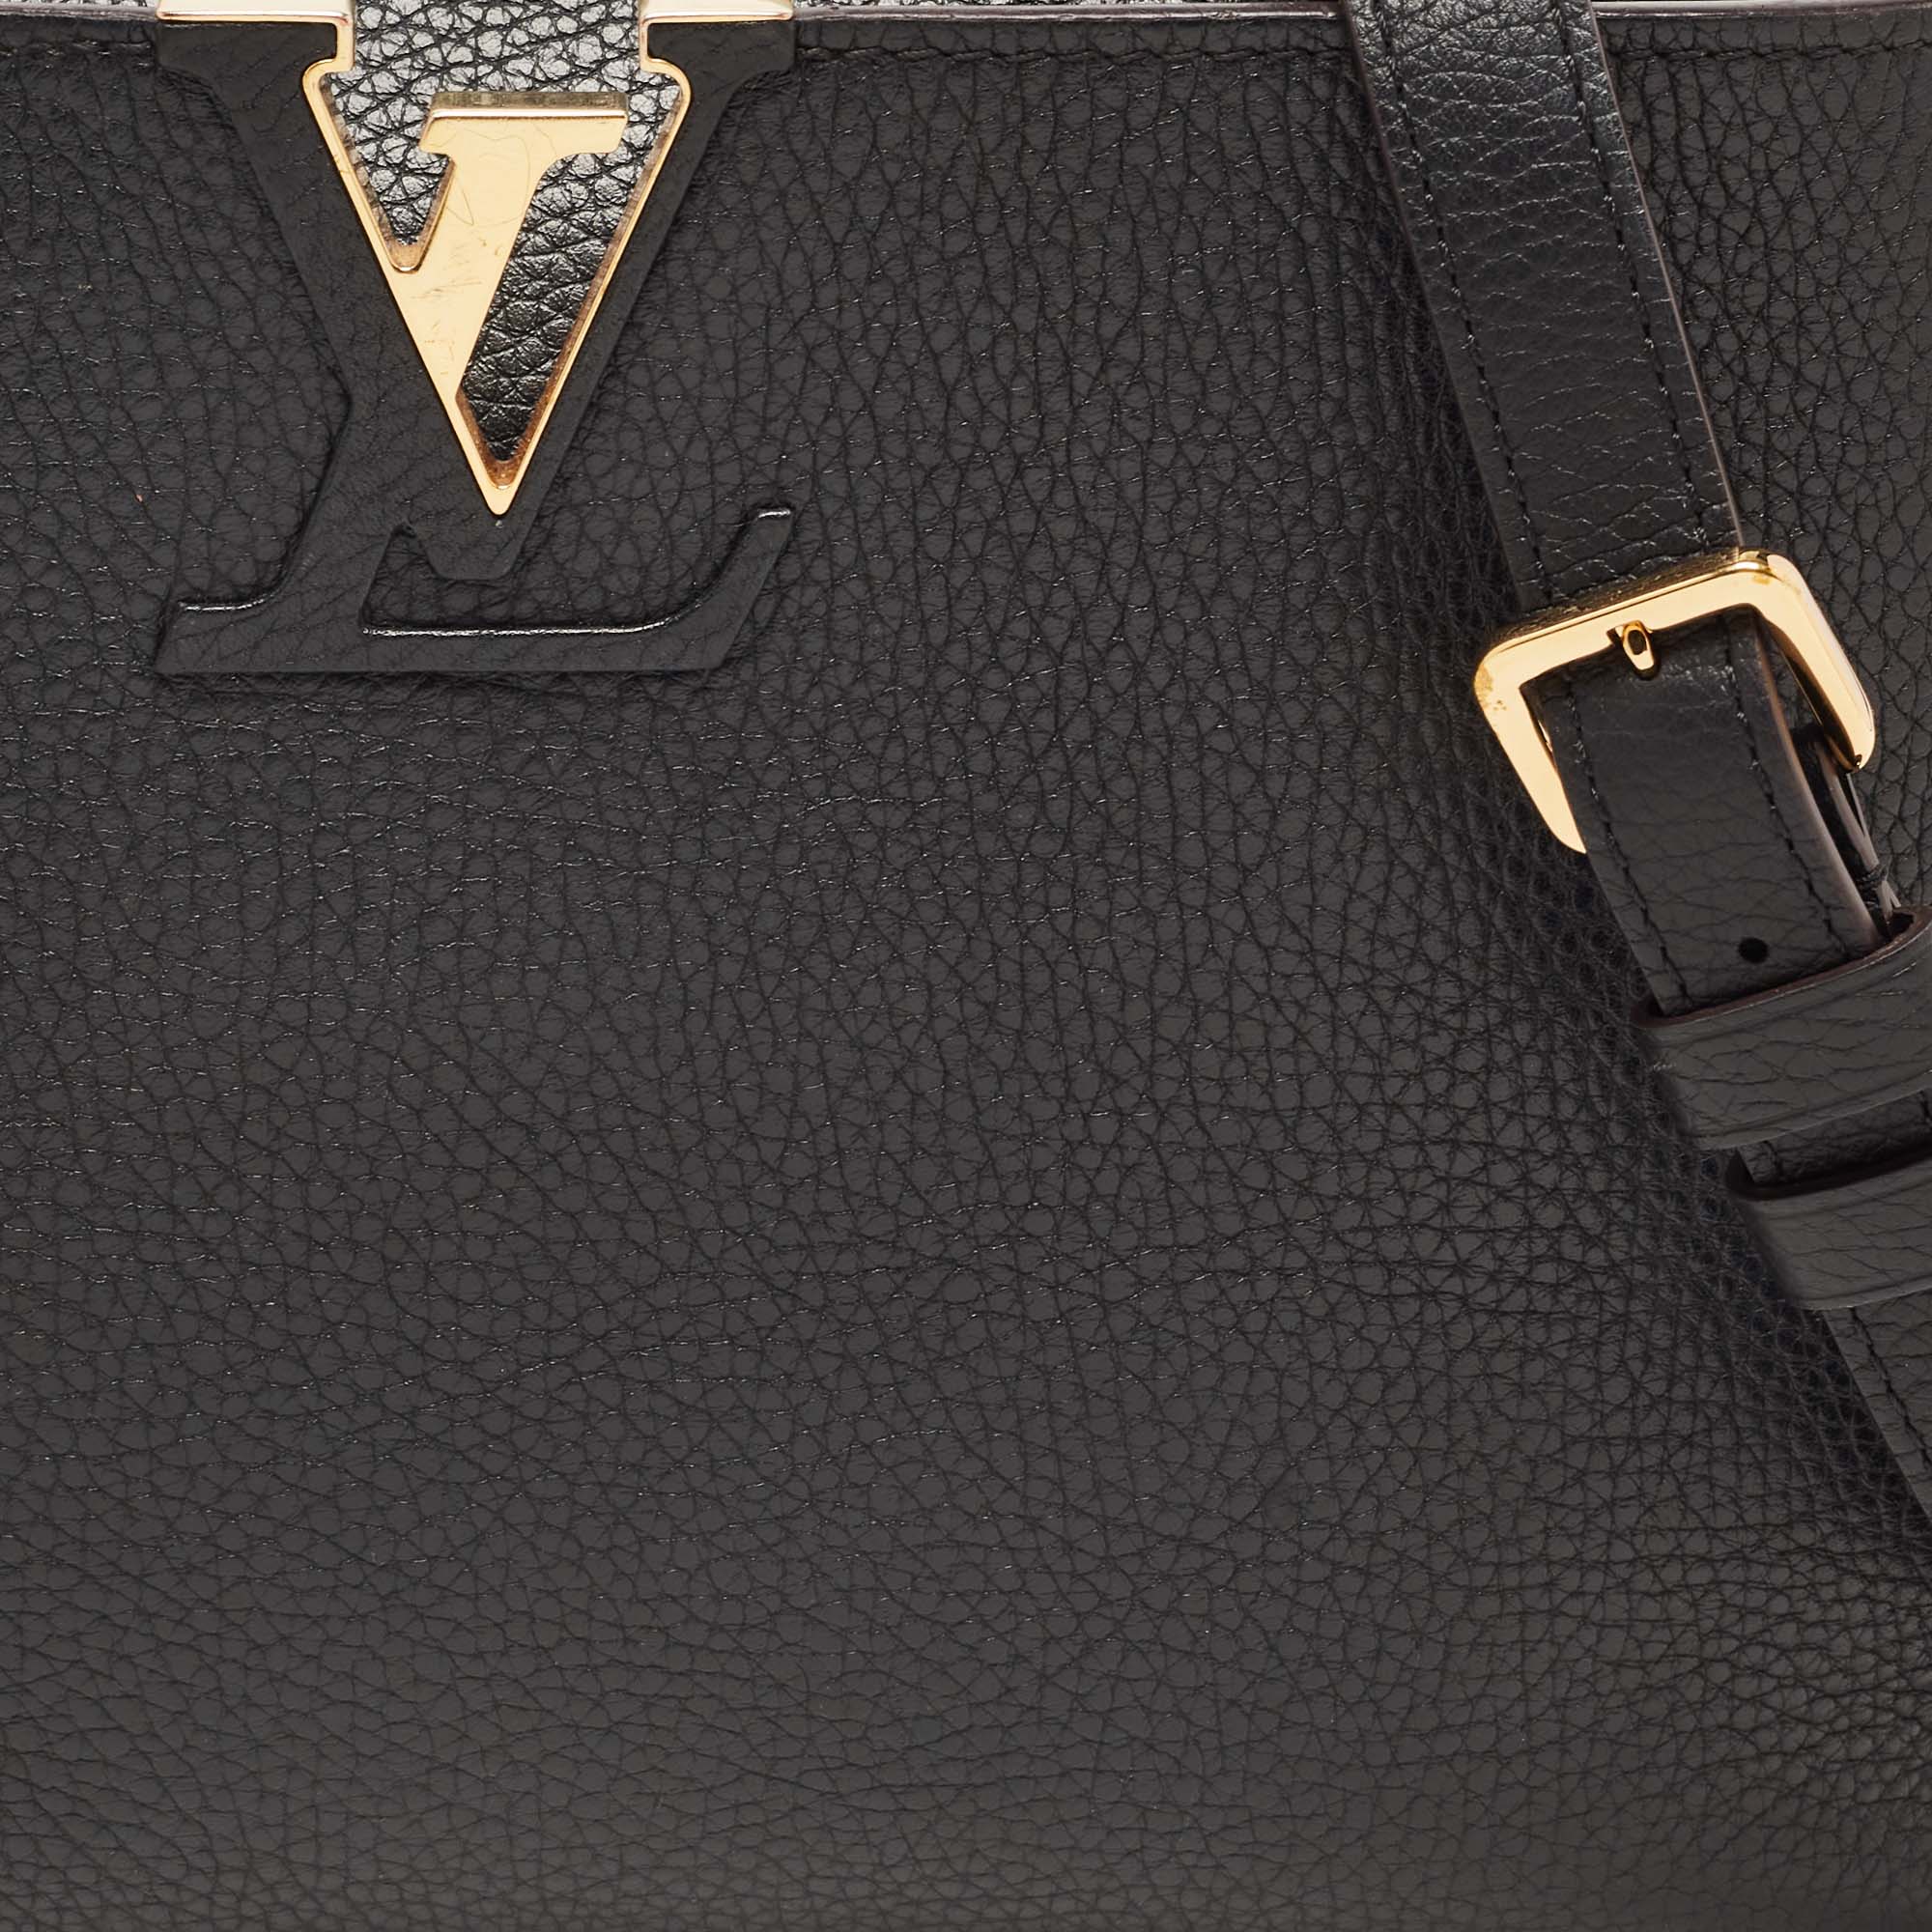 Louis Vuitton Black Taurillon Leather Capucines PM Bag